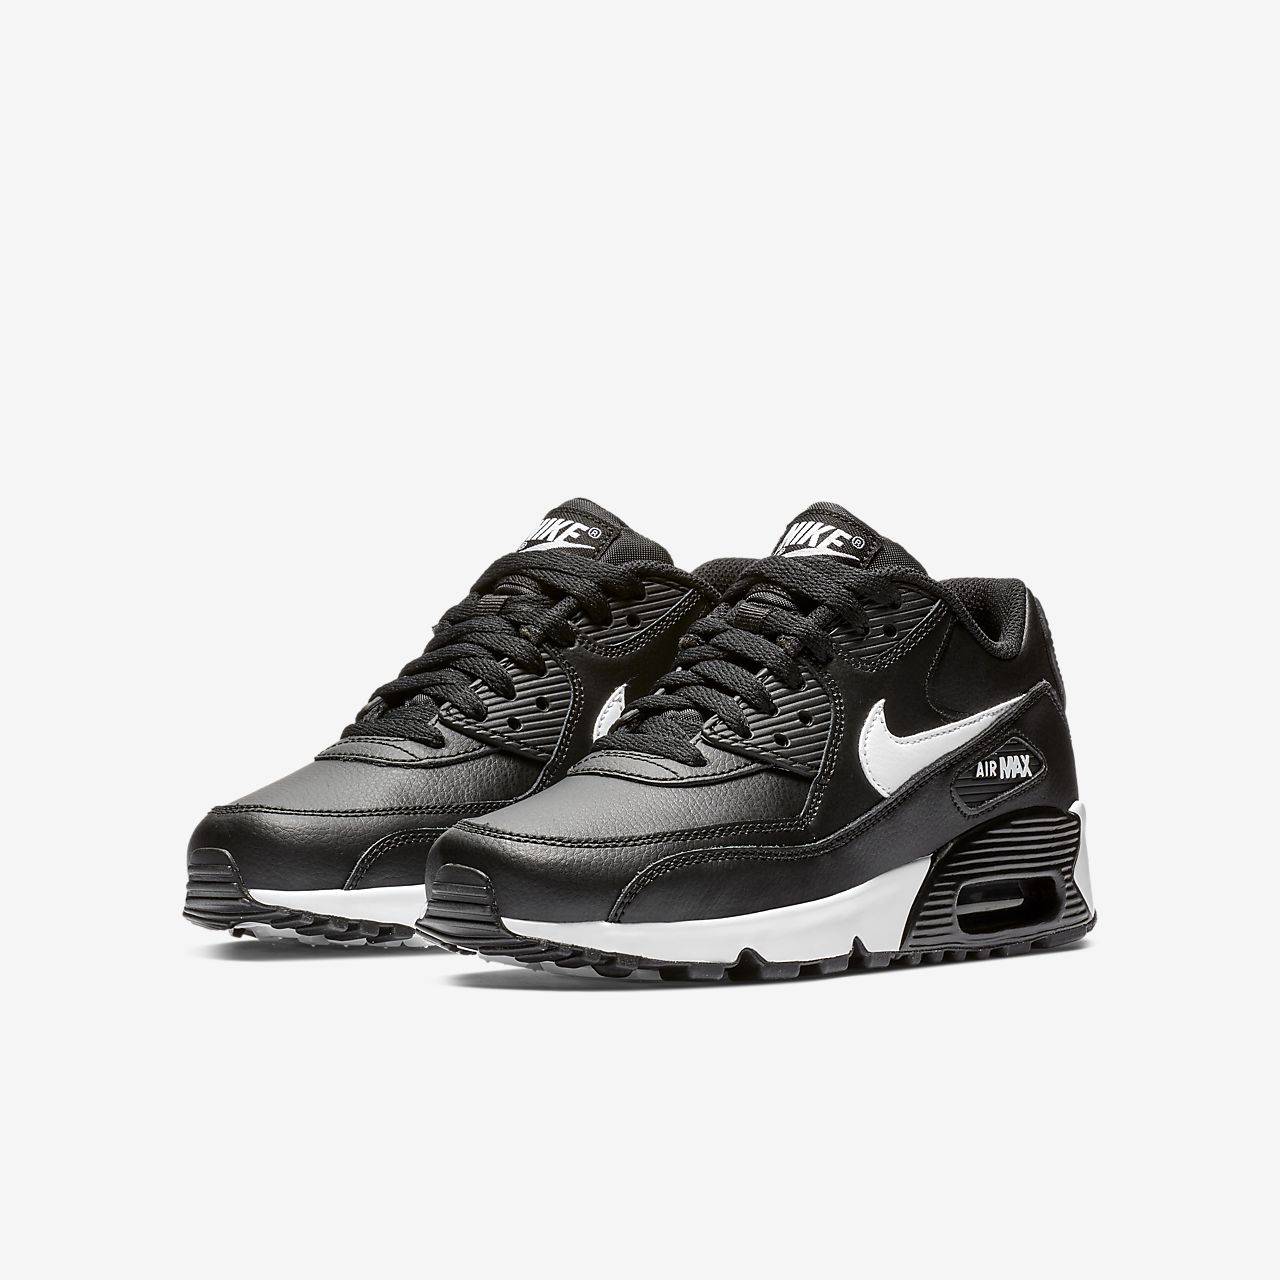 Nike Air Max 90 Leather - Sneakers - Sort/MørkeGrå/Hvide | DK-74331